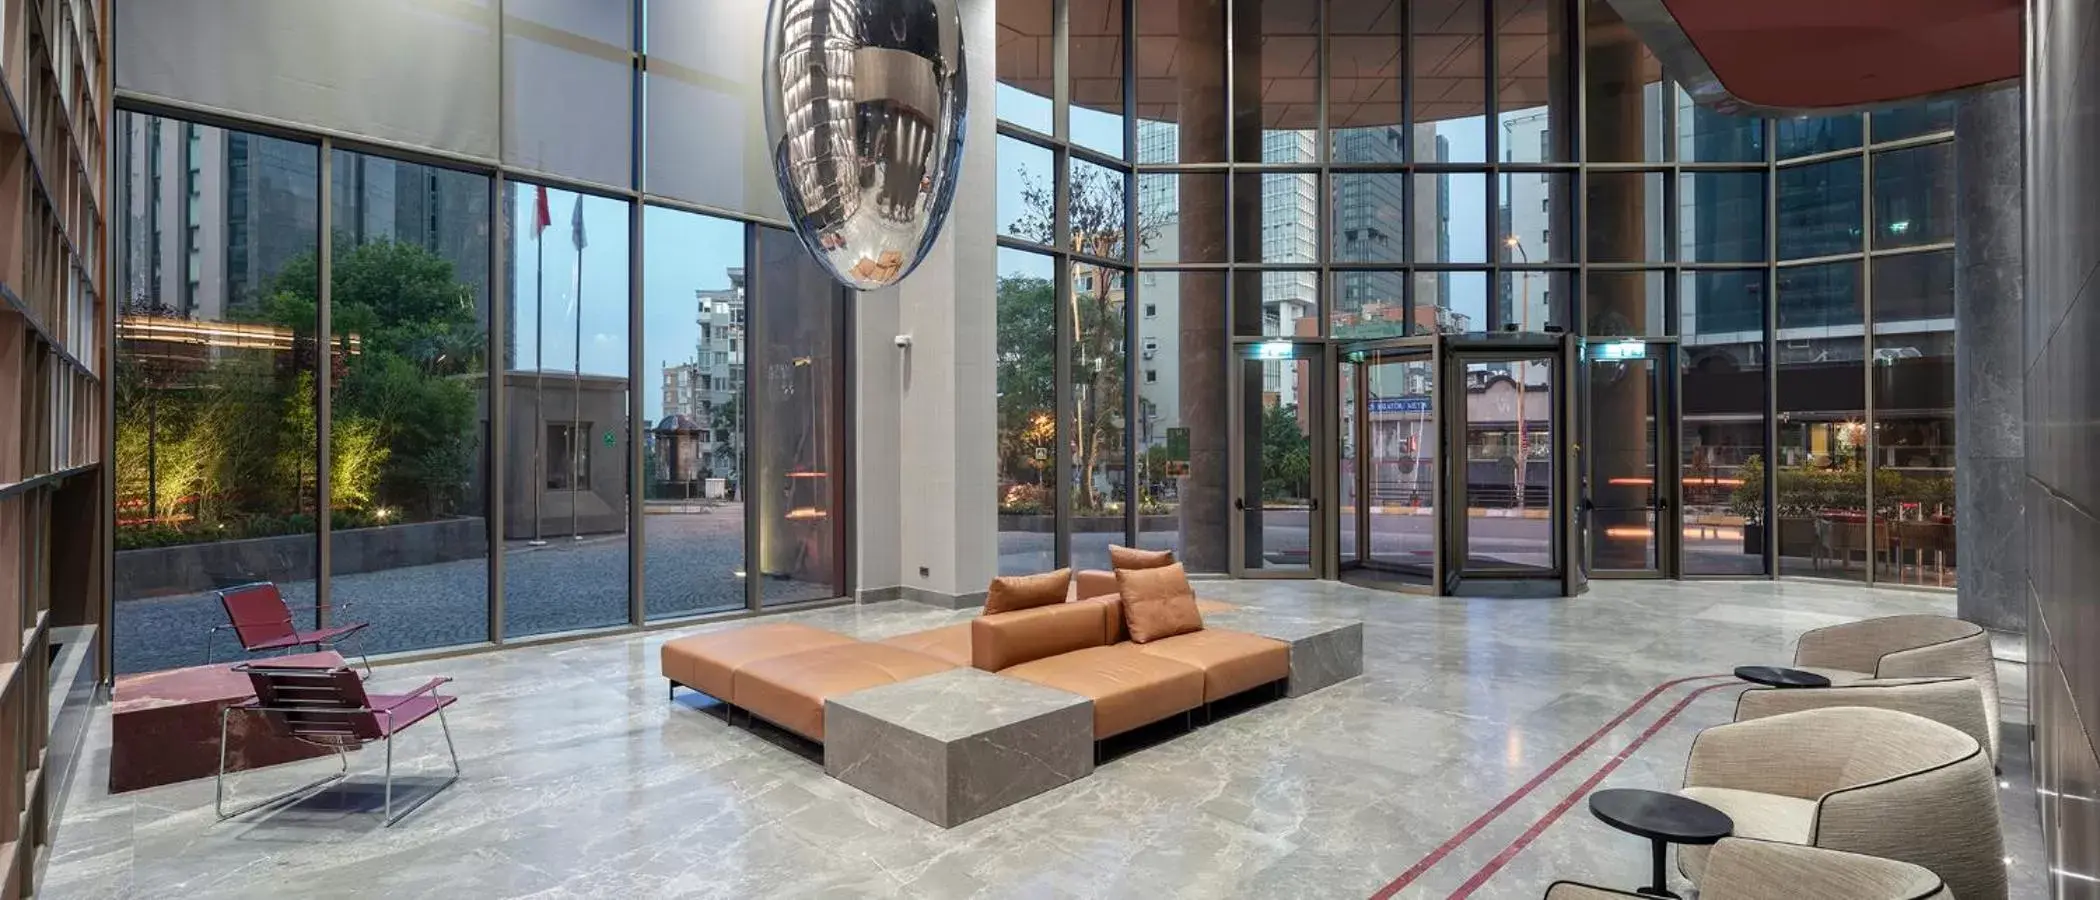 Lobby or reception, Lobby/Reception in Melas Hotel Istanbul